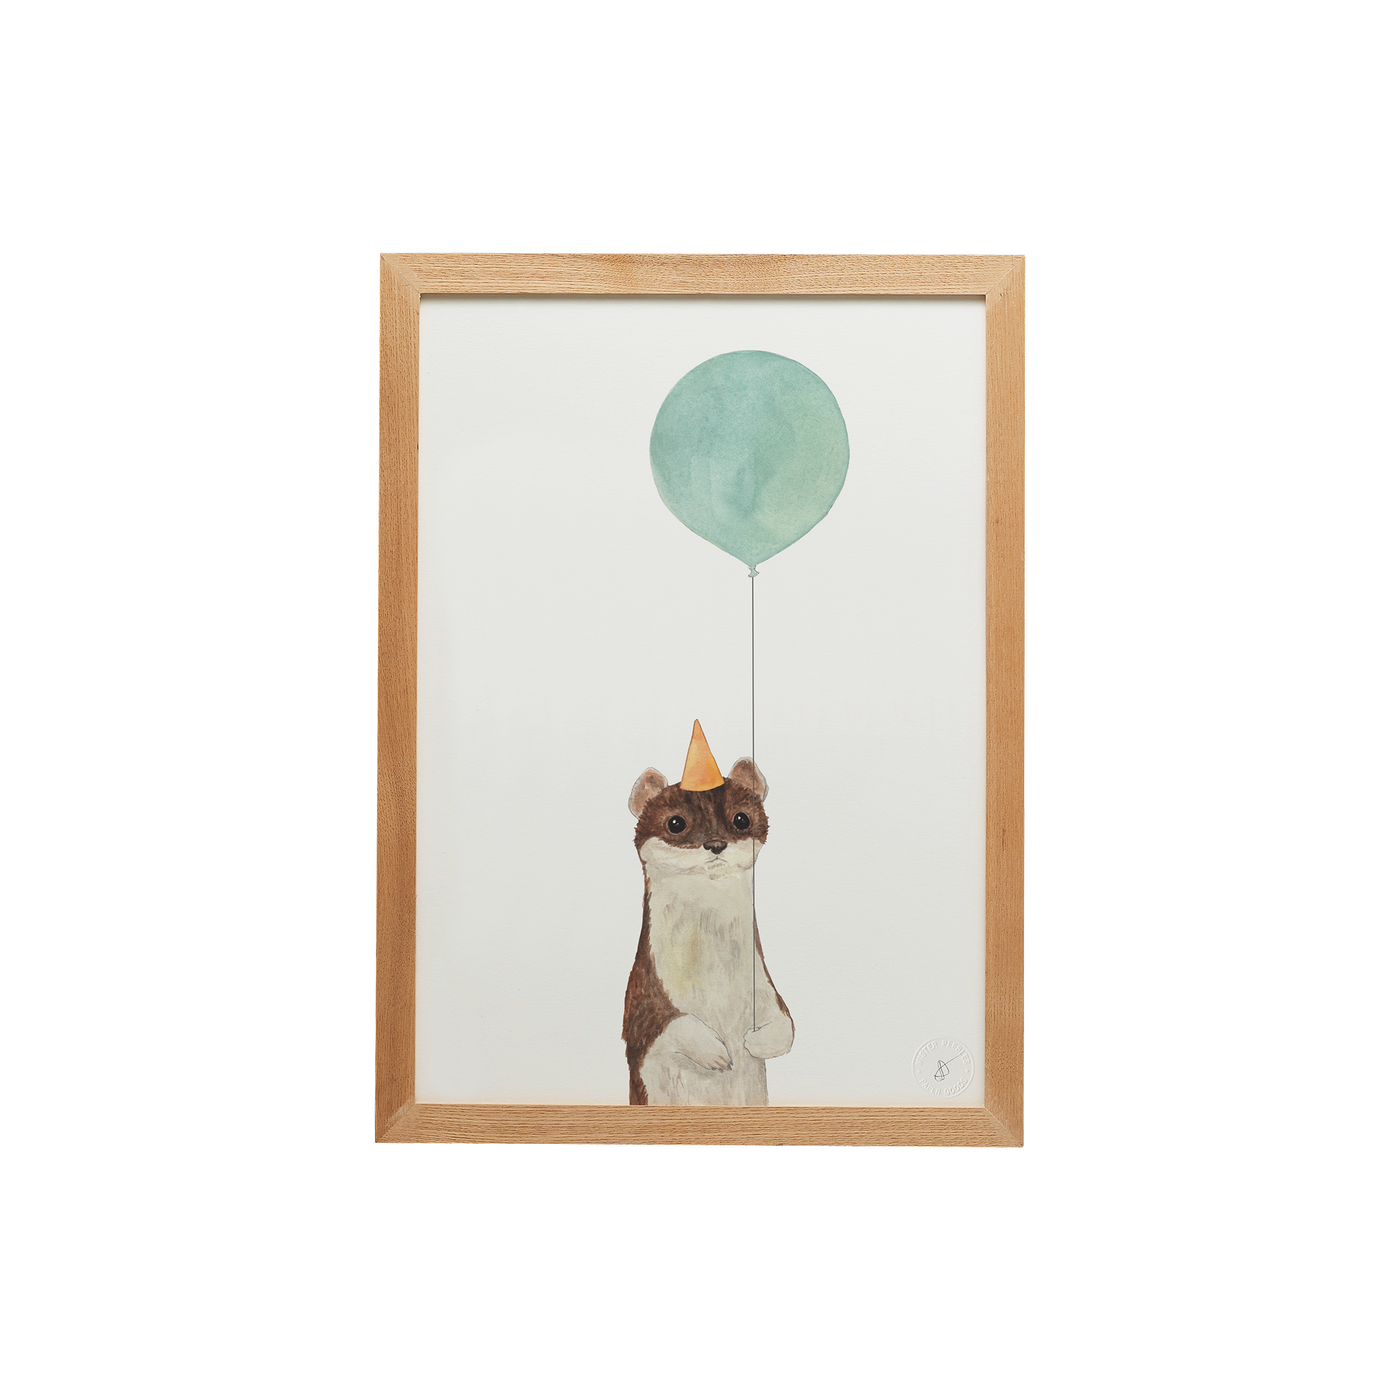 Balloon Animal Weasel Print Framed